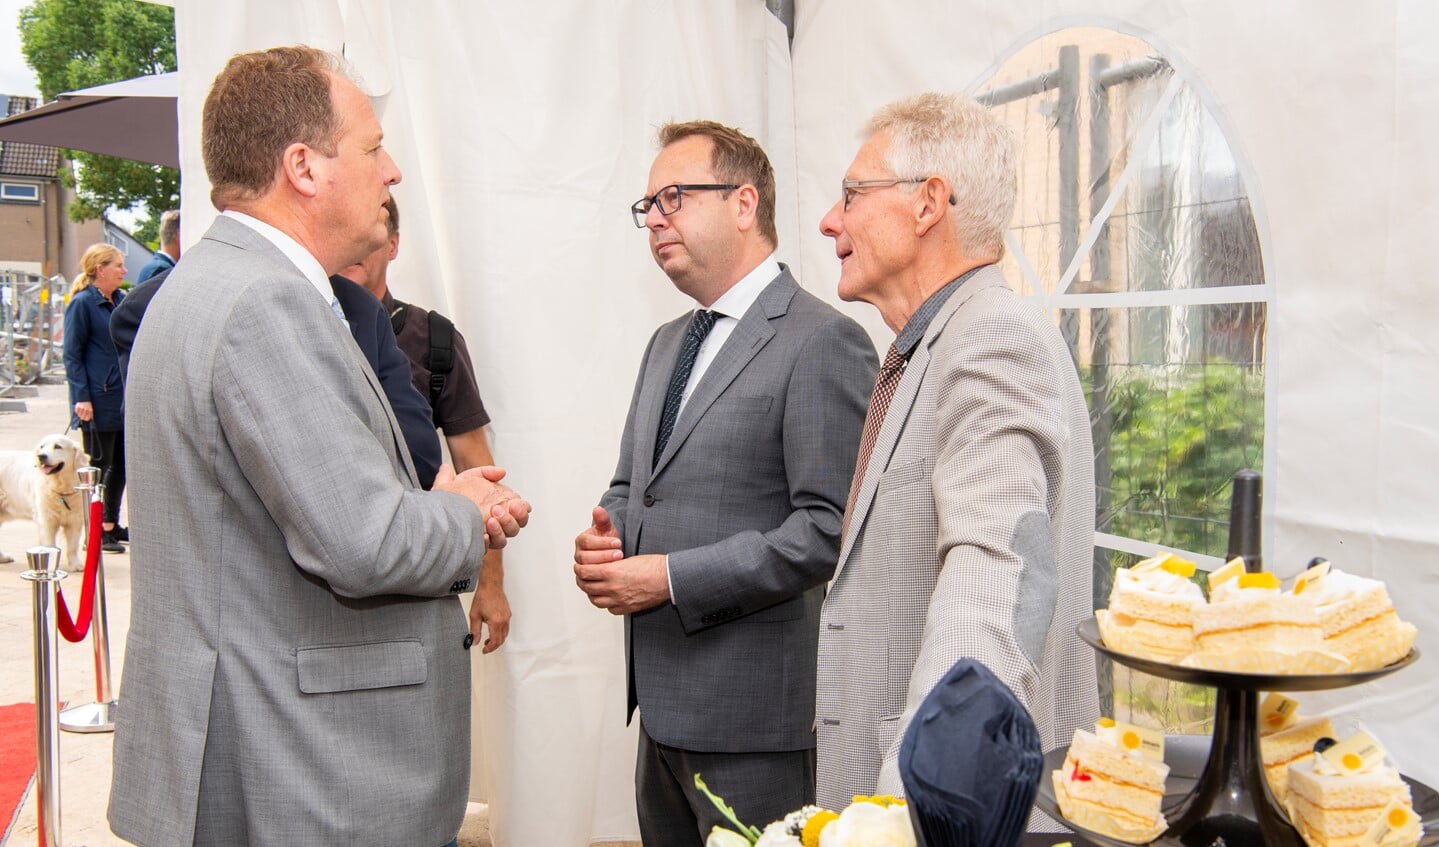 Burgemeester Roland van Benthem en wethouder Jan van Katwijk in gesprek met René Hup (l) van Amaris.